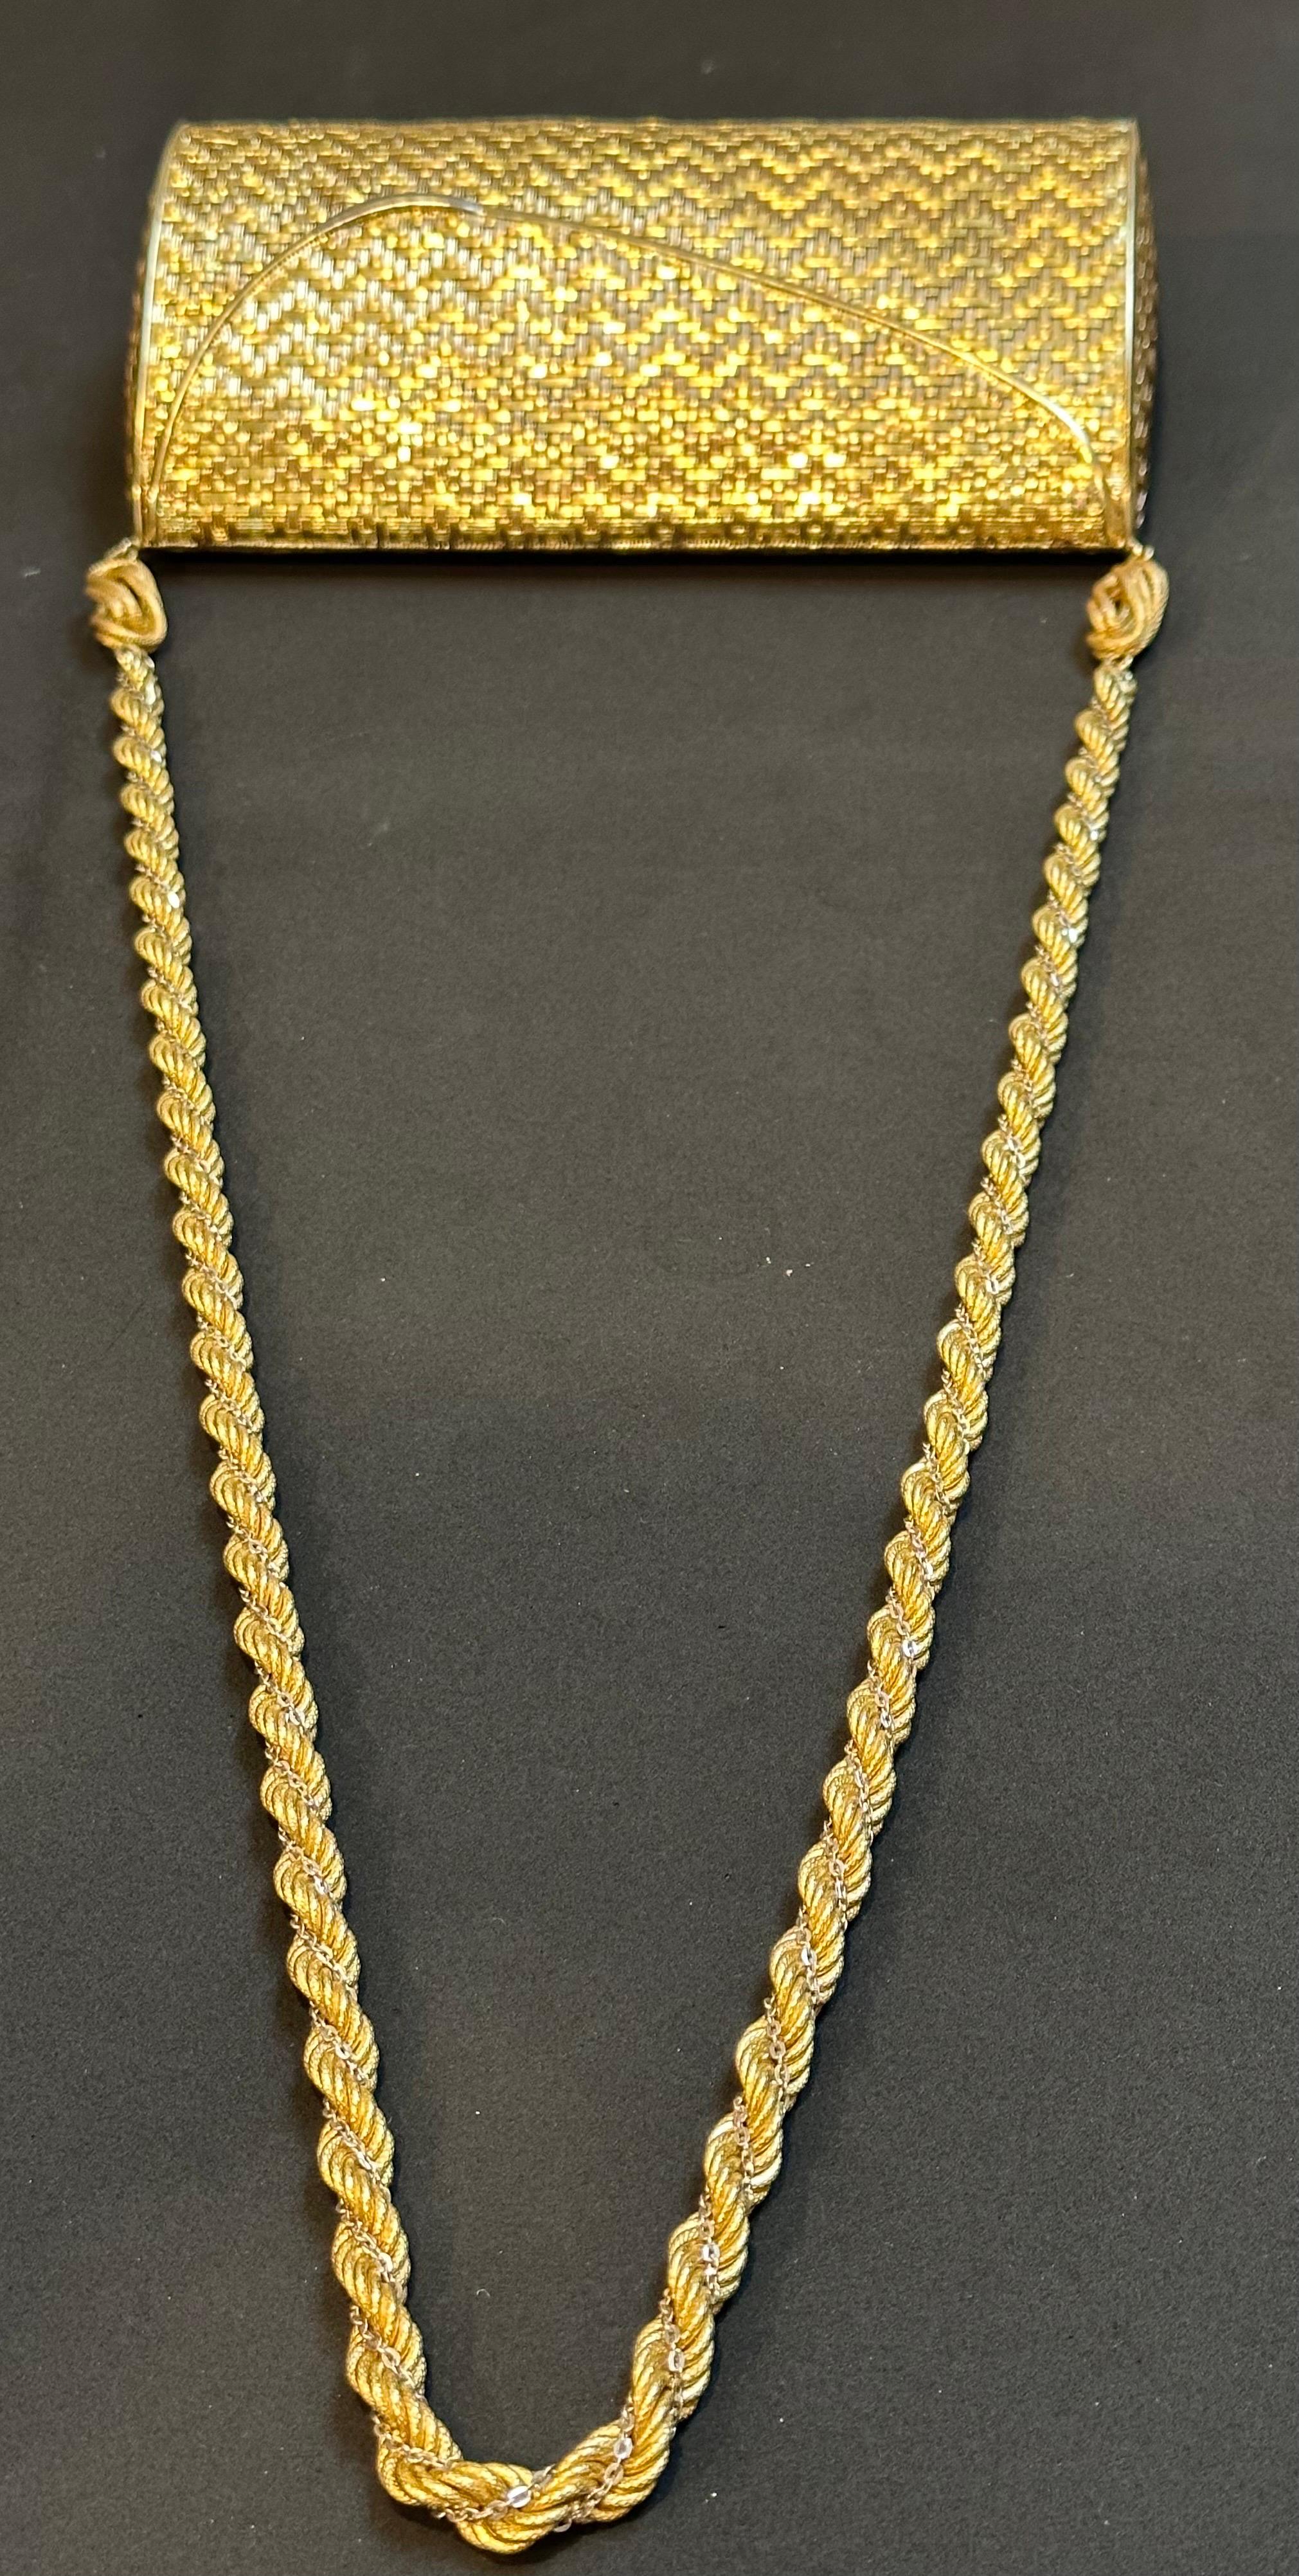  Cartier - Sac à main en maille or jaune 18 carats avec chaîne à l'épaule - Rare - 401 Gm Pour femmes 